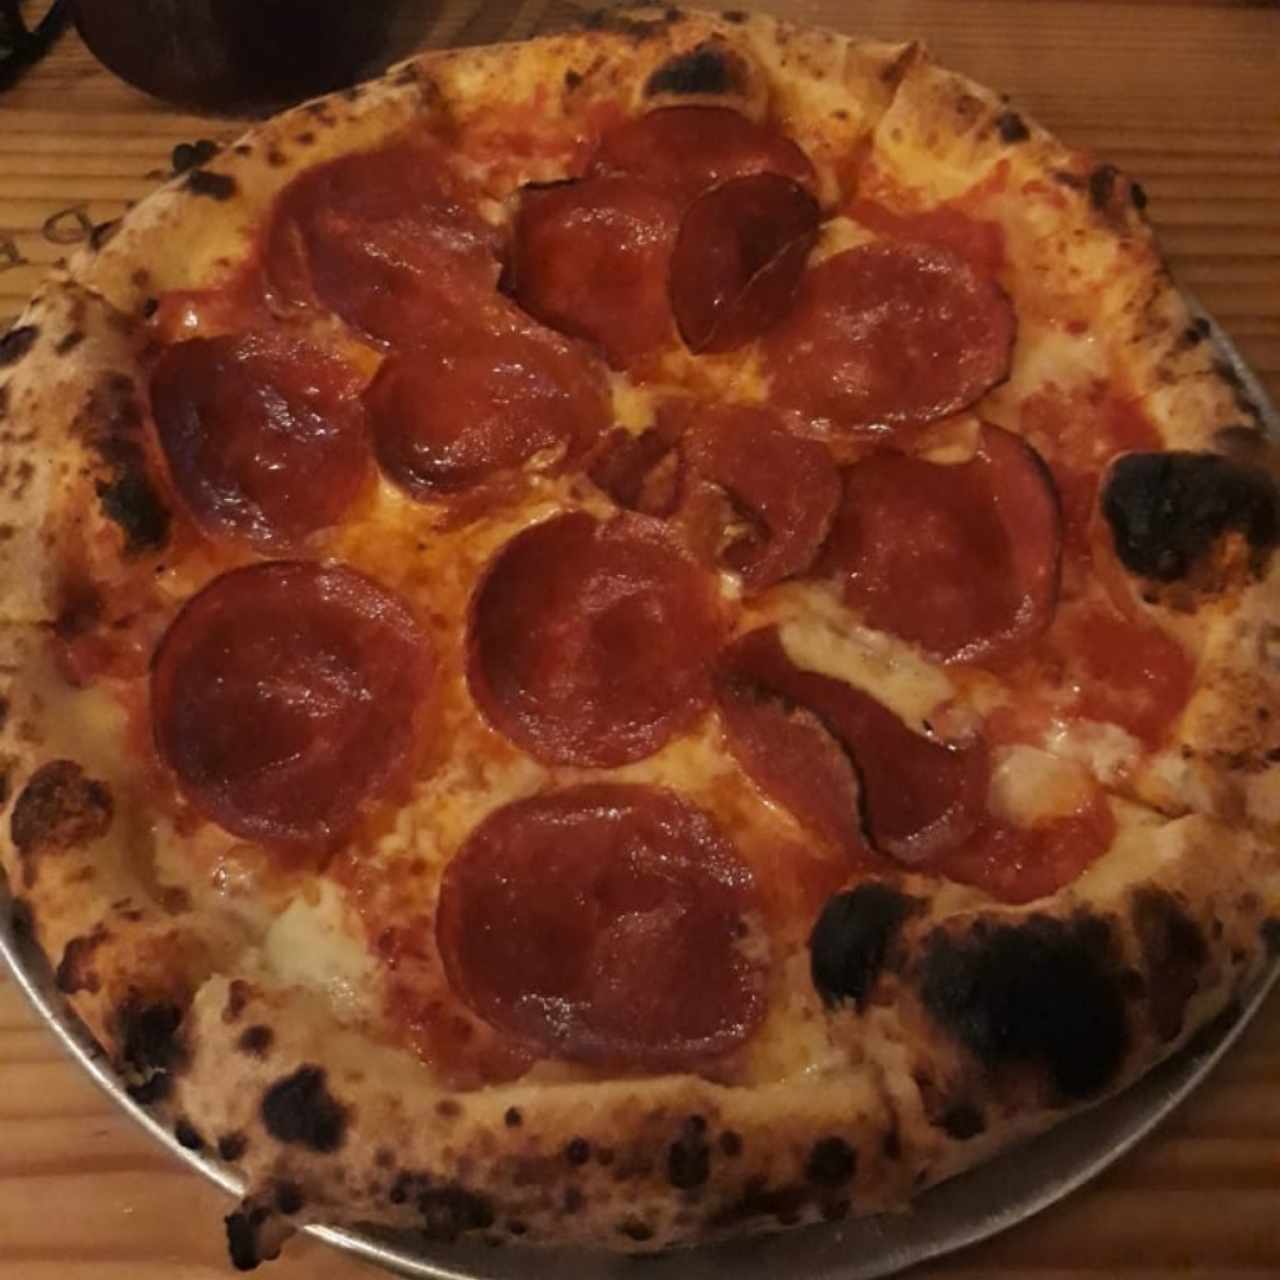 Pizza Pepperonni